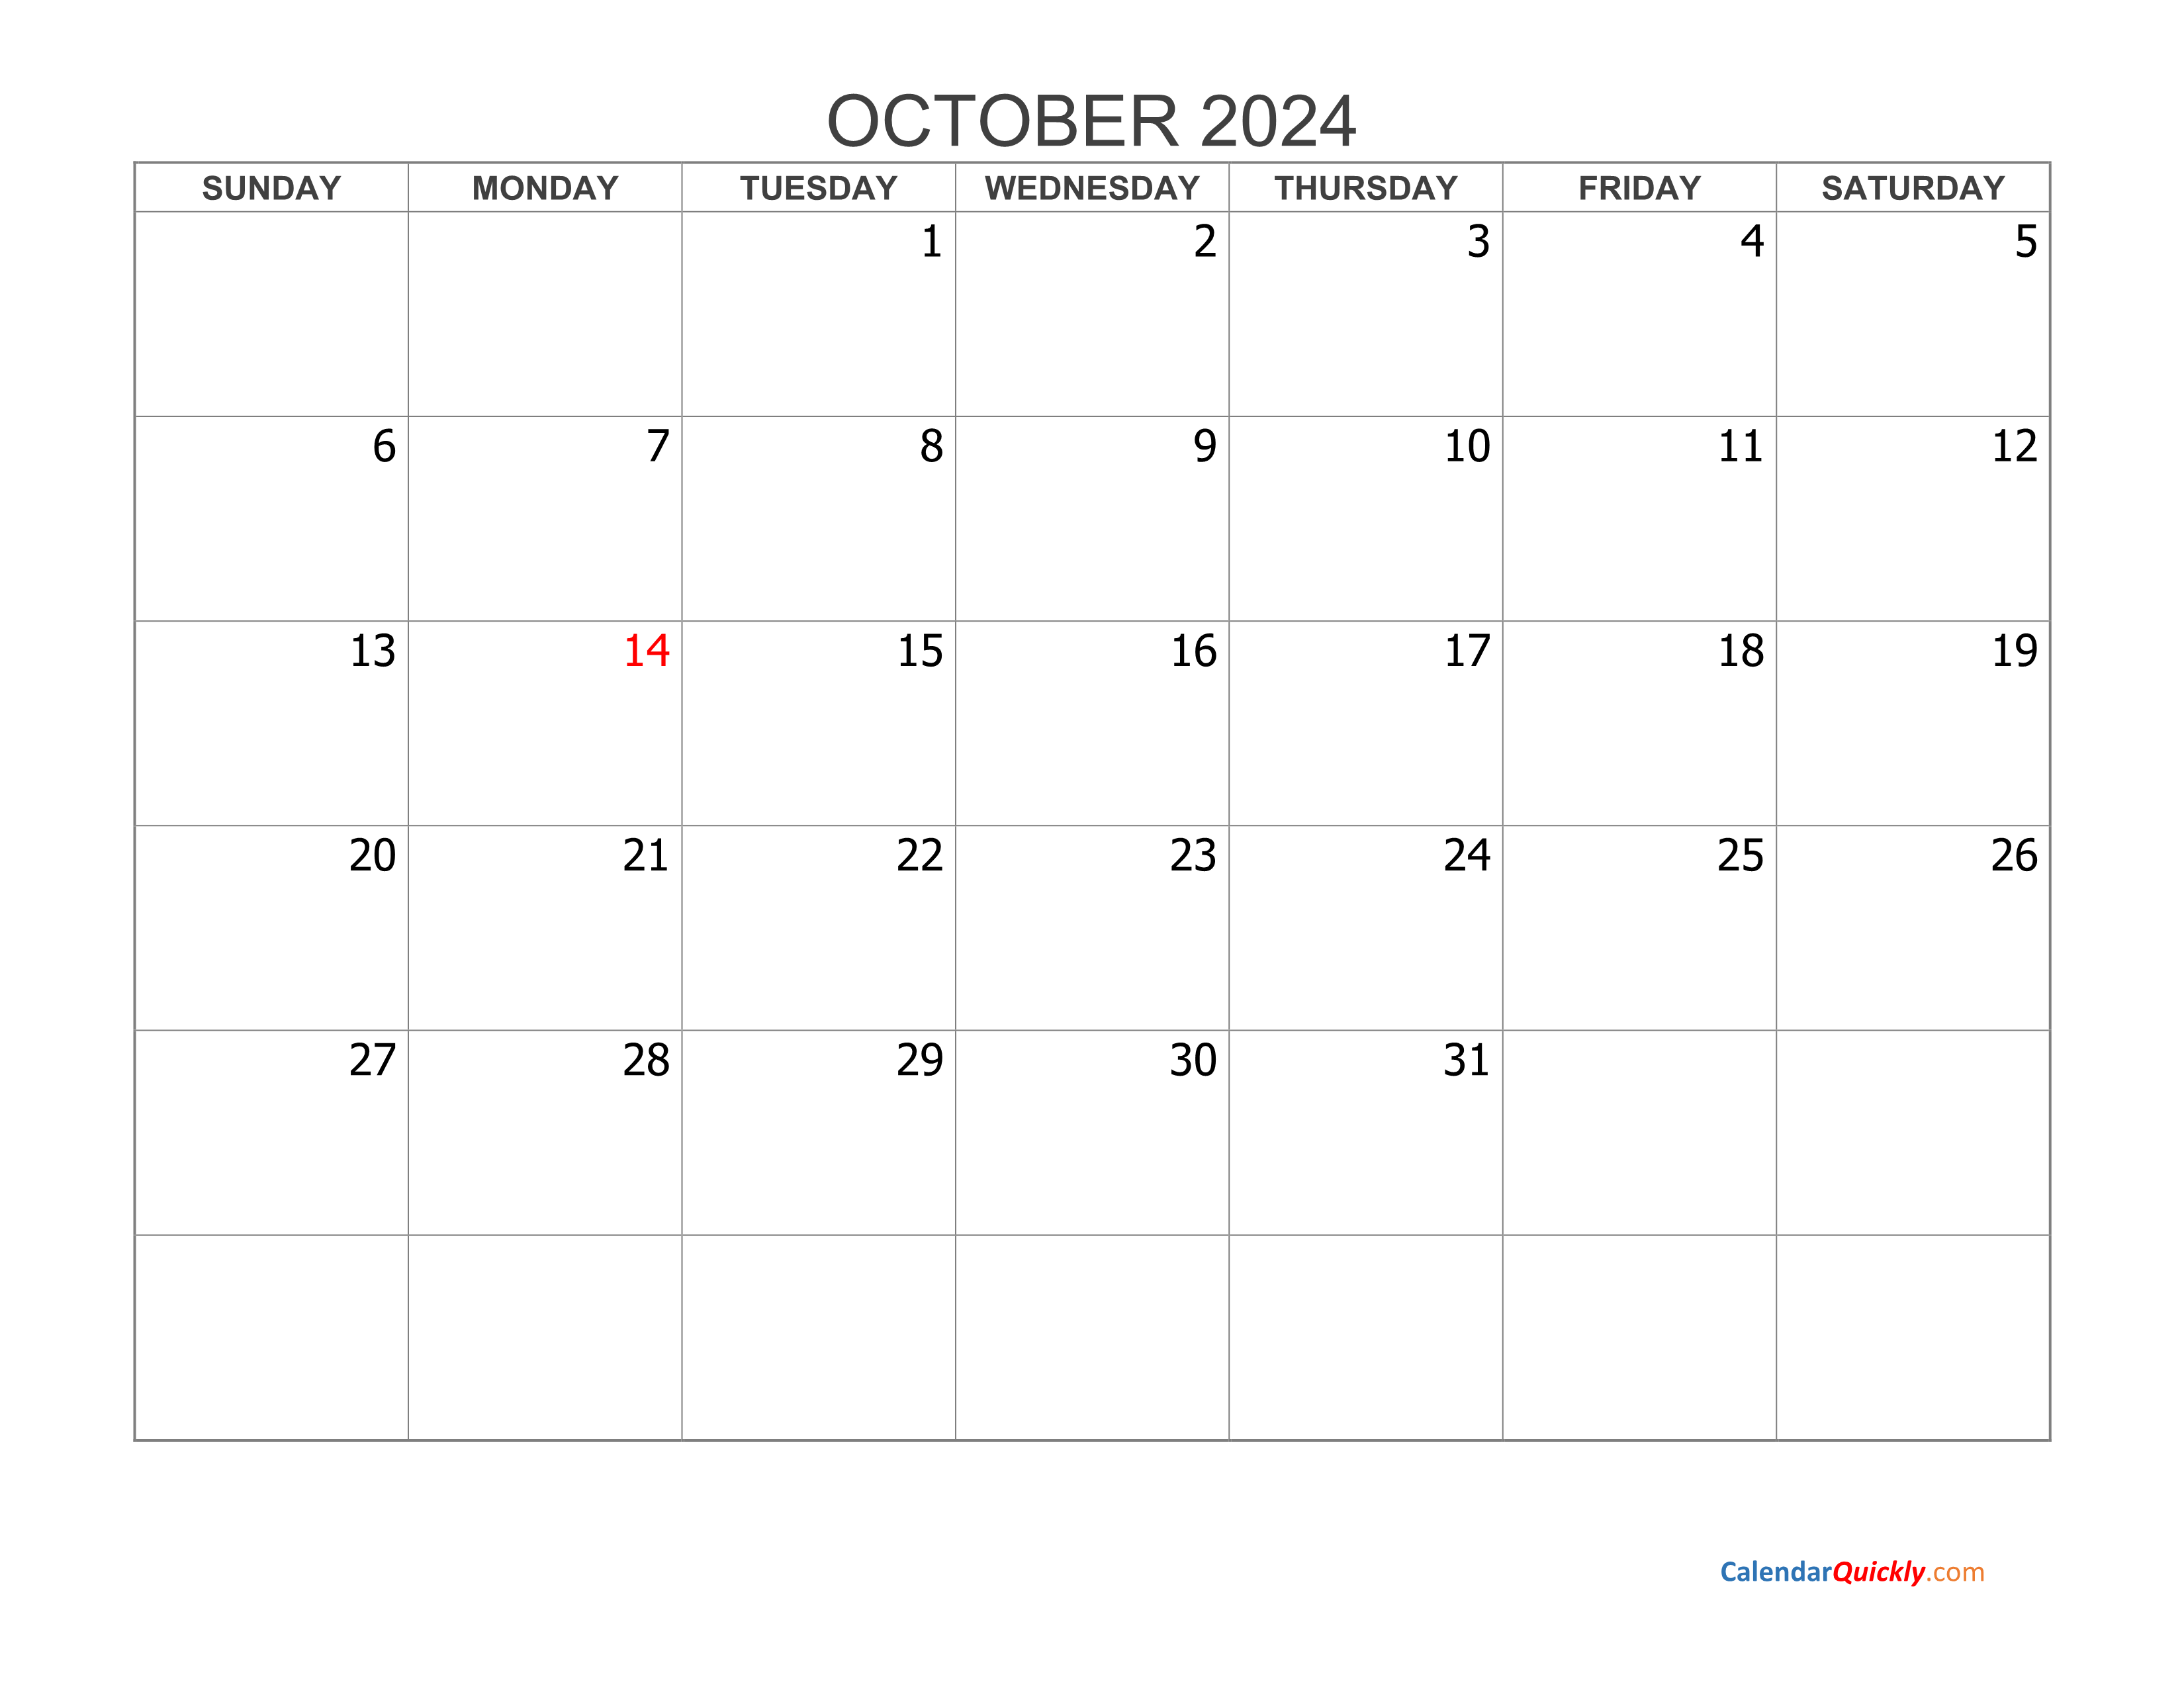 October 2024 Blank Calendar Calendar Quickly